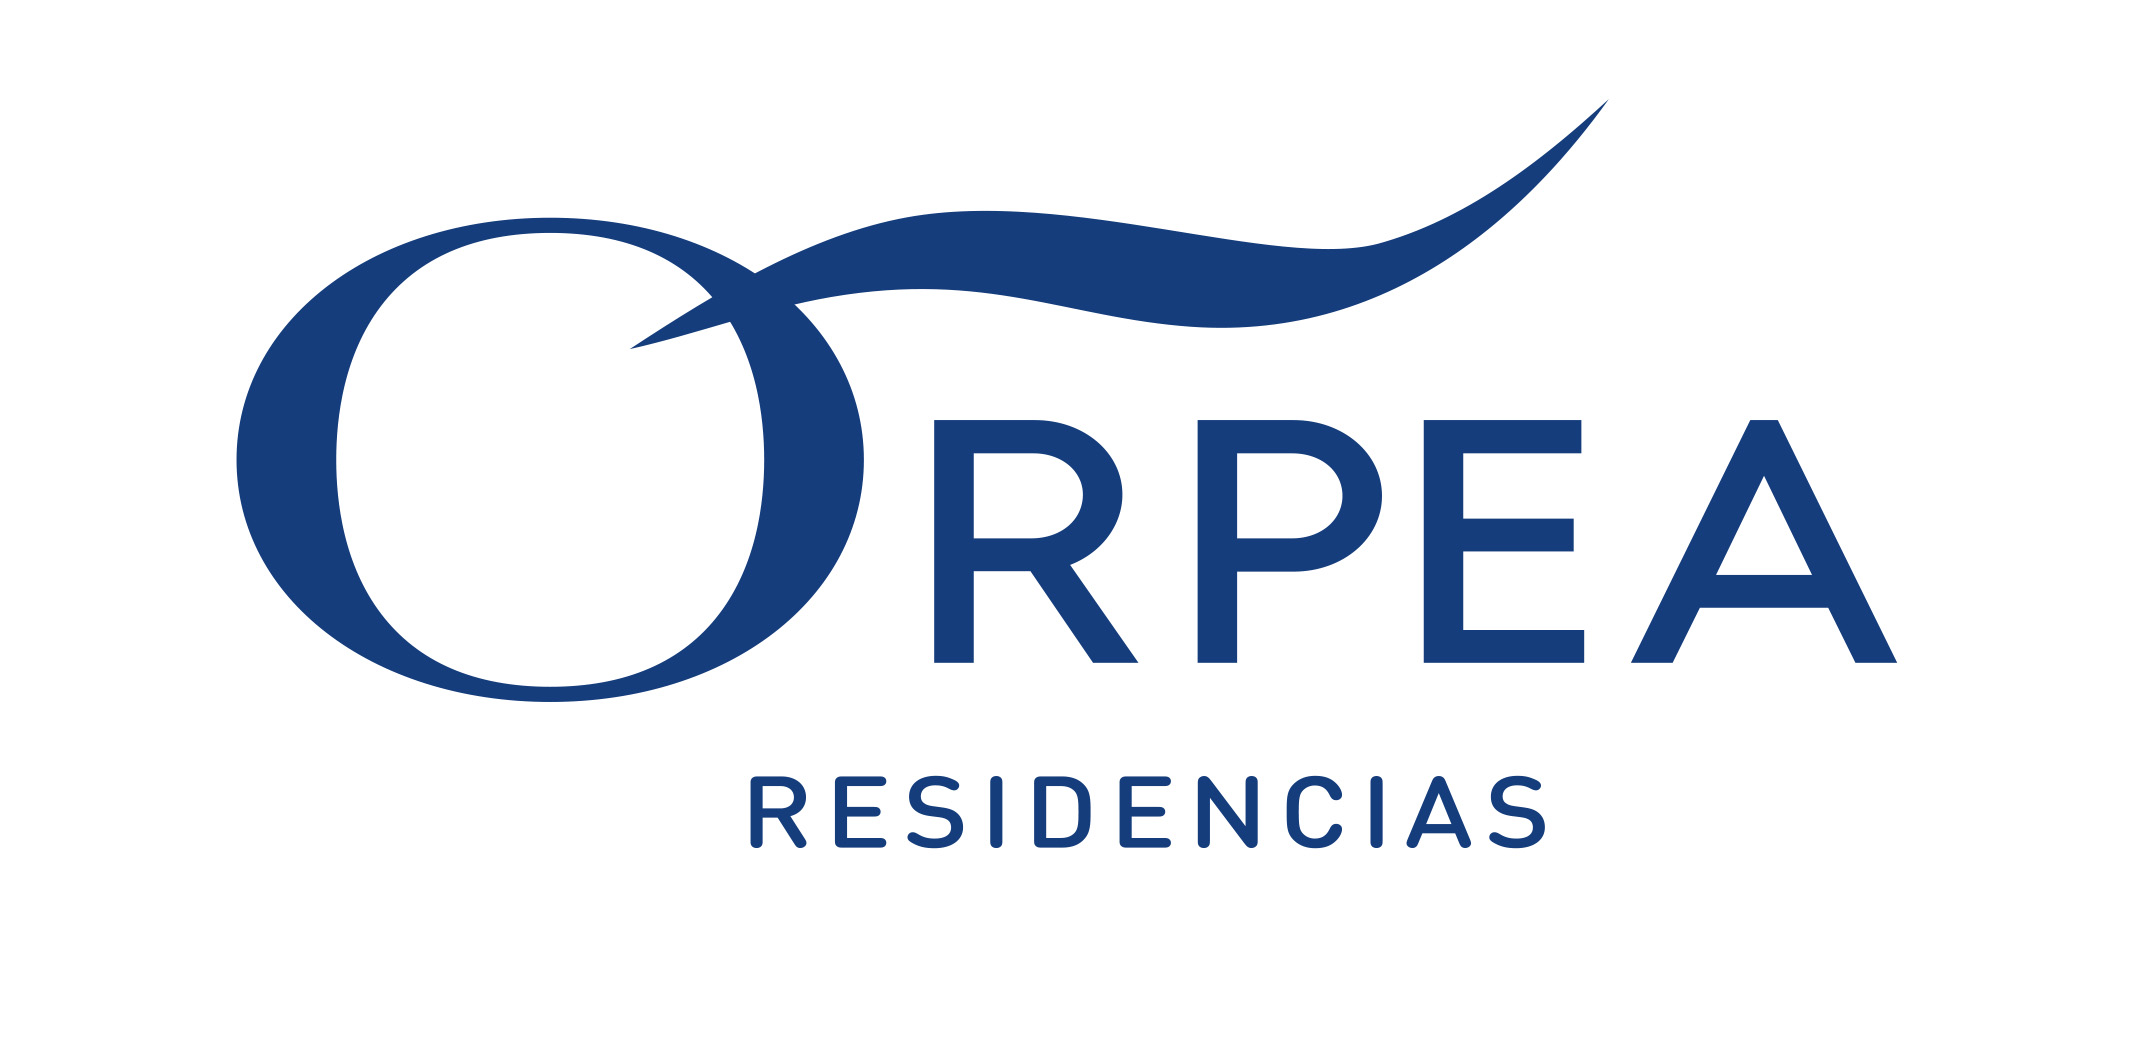 ORPEA ha realizado casi 10.000 test a trabajadores y residentes de todos sus centros